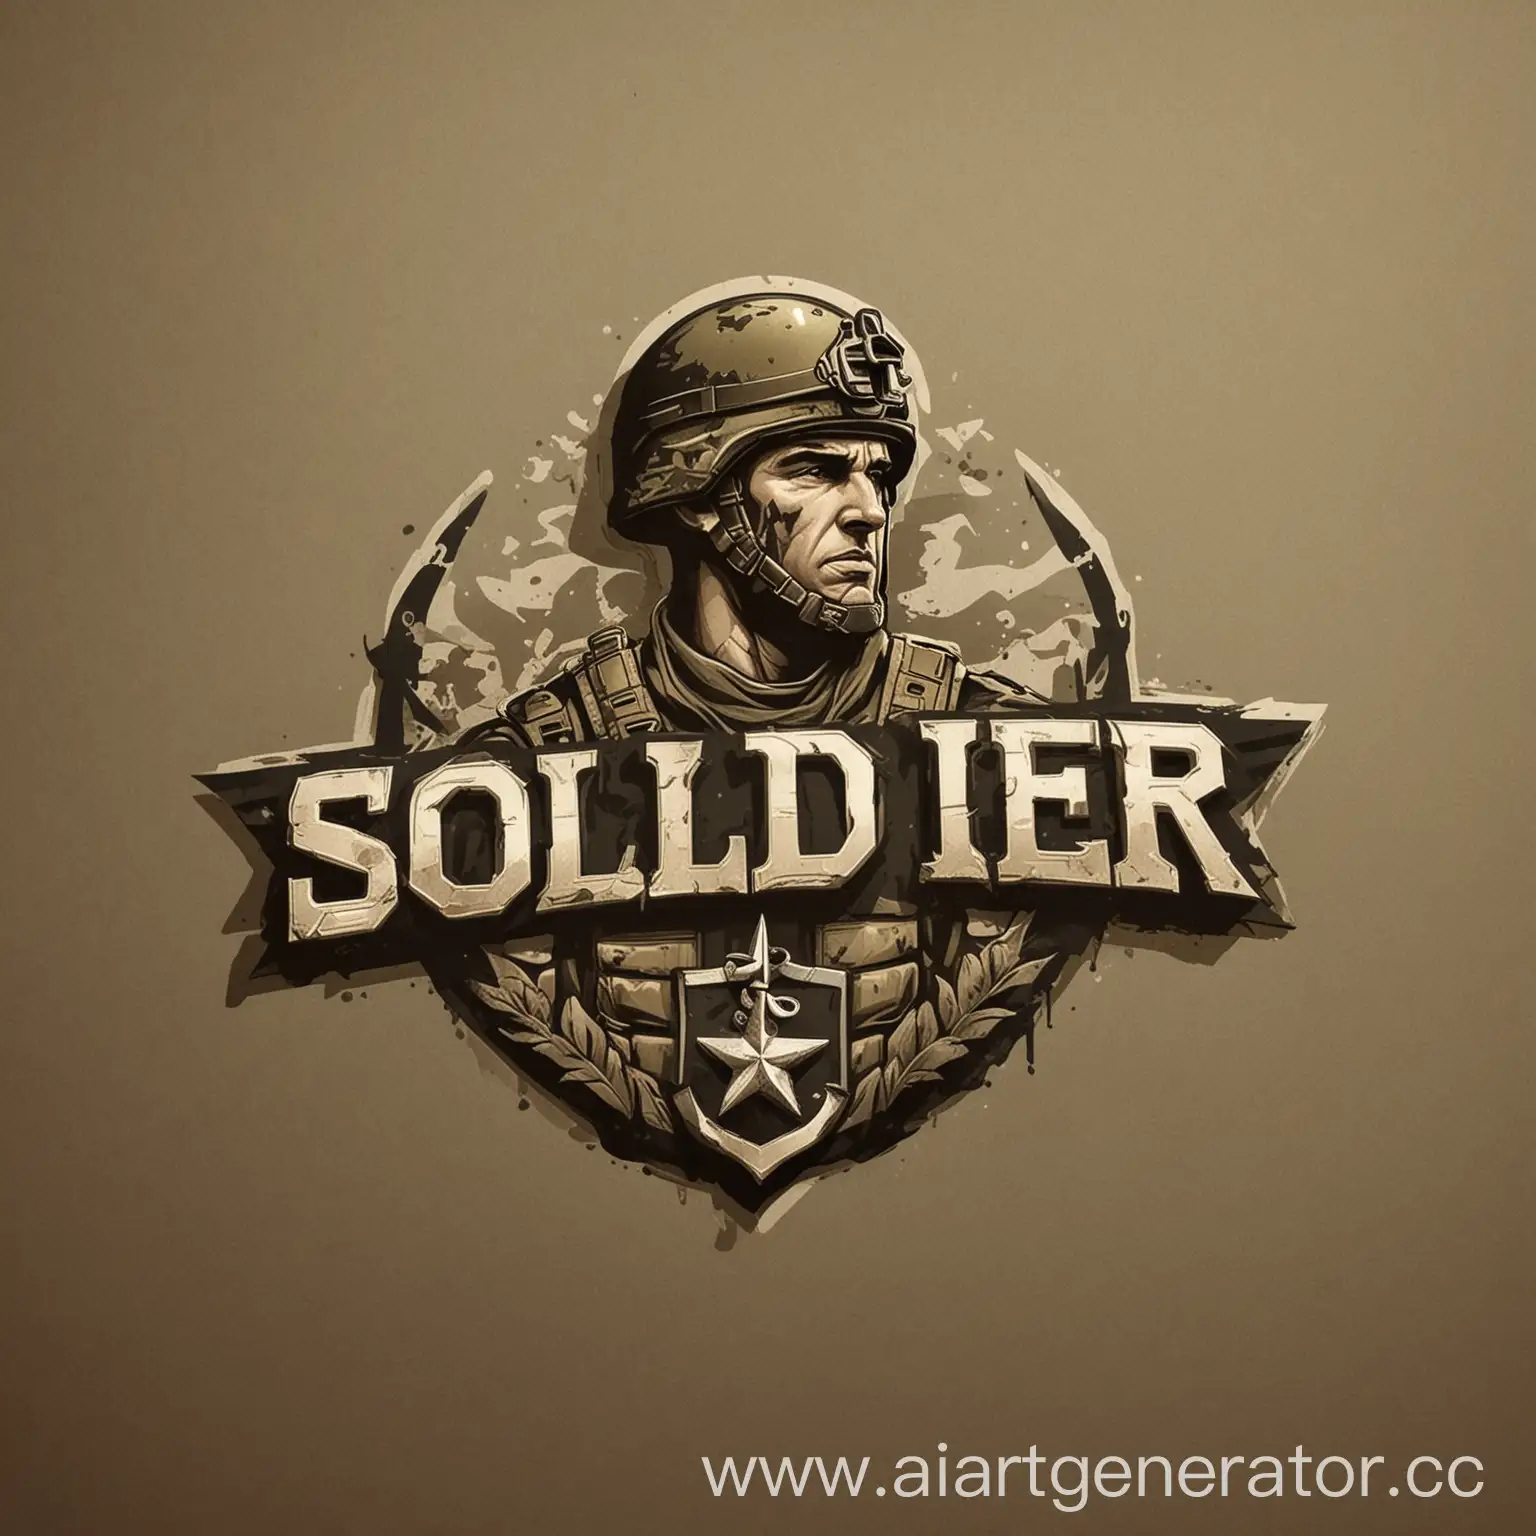 придумать логотип на военную тему к слову солдат 